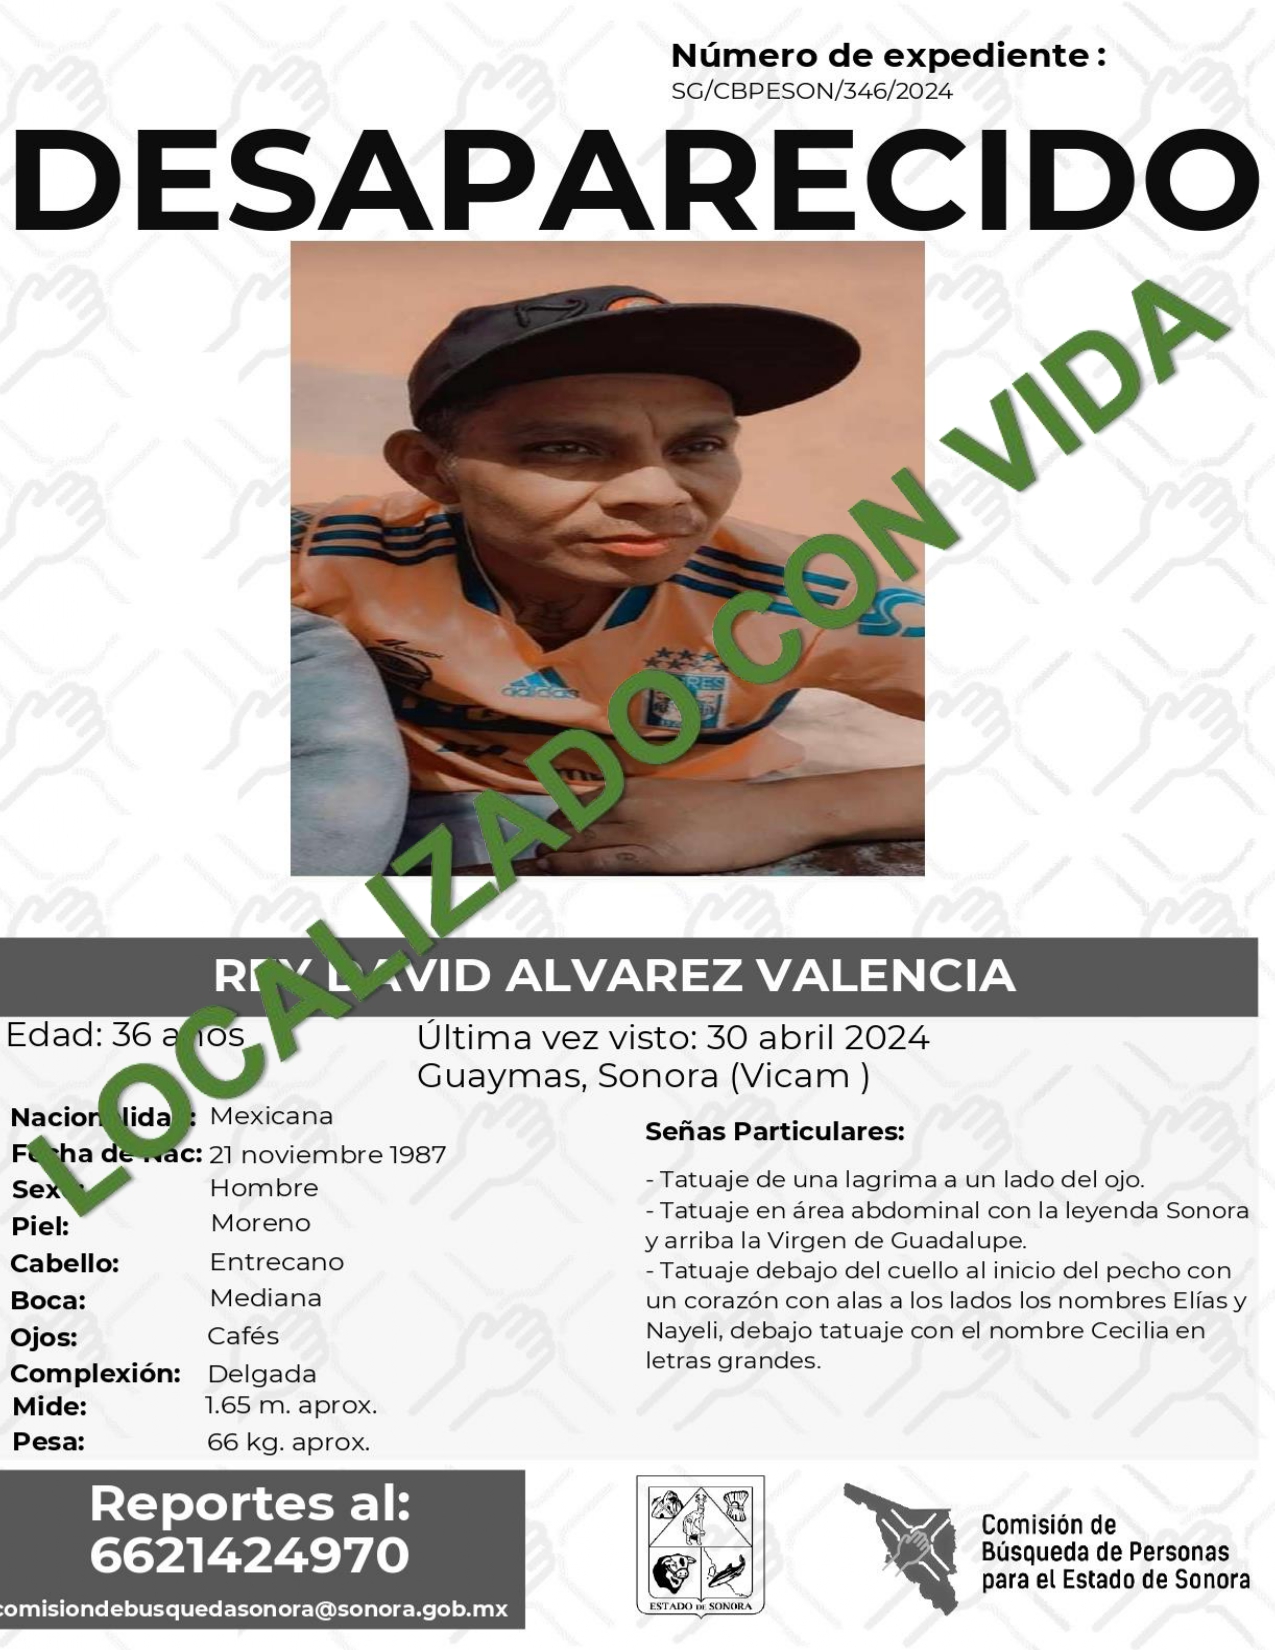 REY DAVID ALVAREZ VALENCIA - LOCALIZADO CON VIDA